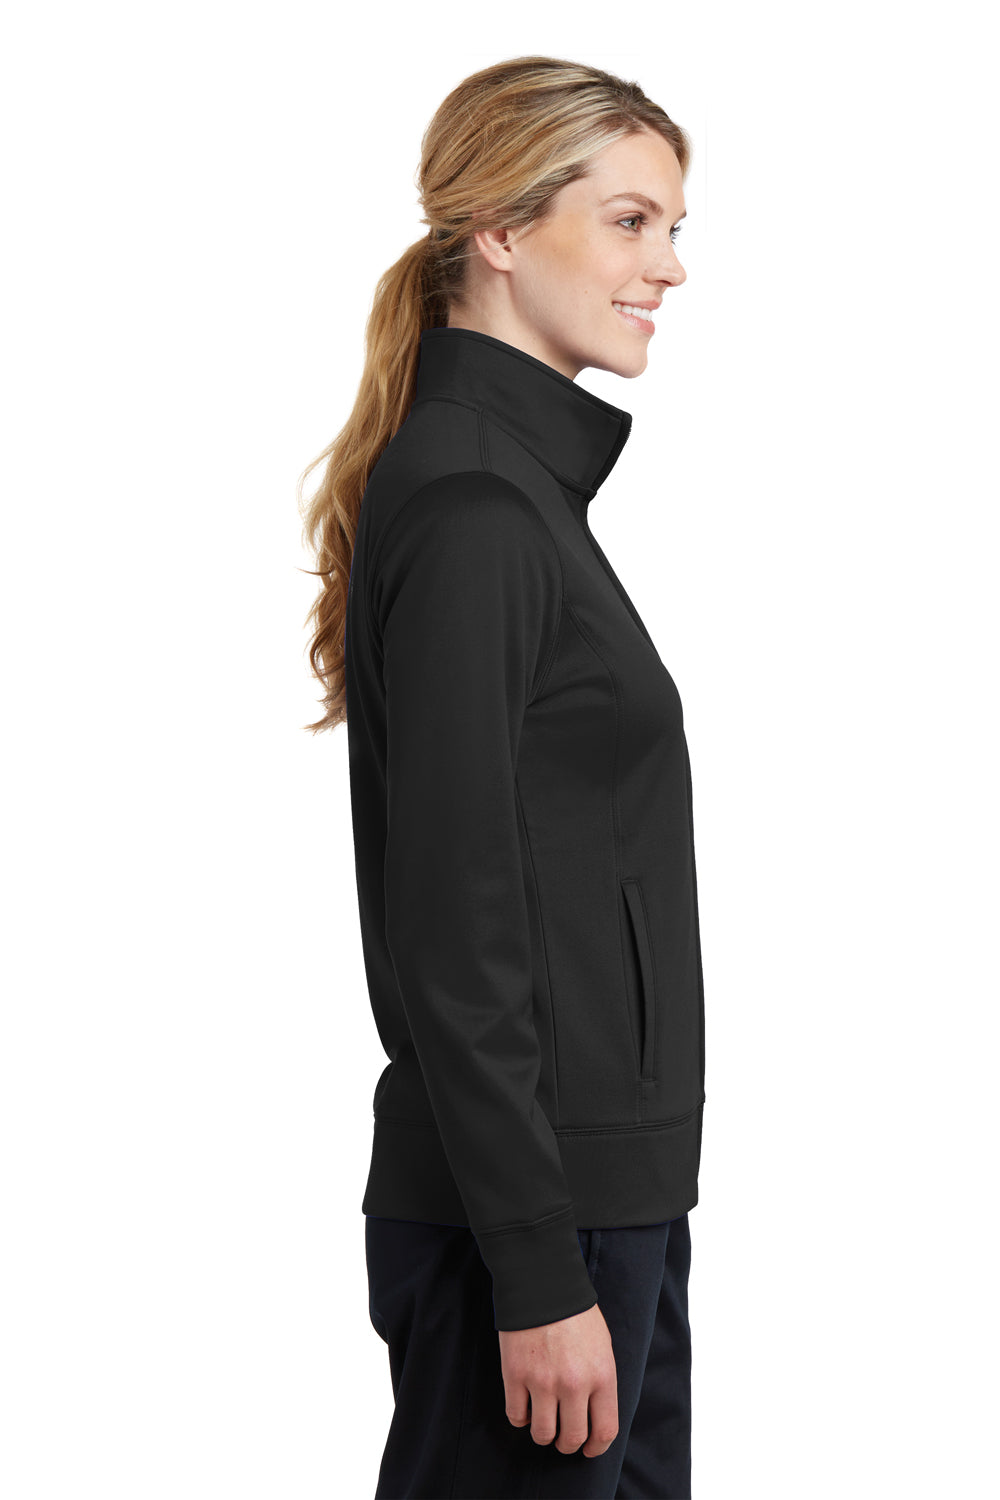 Sport-Tek LST241 Womens Sport-Wick Moisture Wicking Fleece Full Zip Sweatshirt Black Side